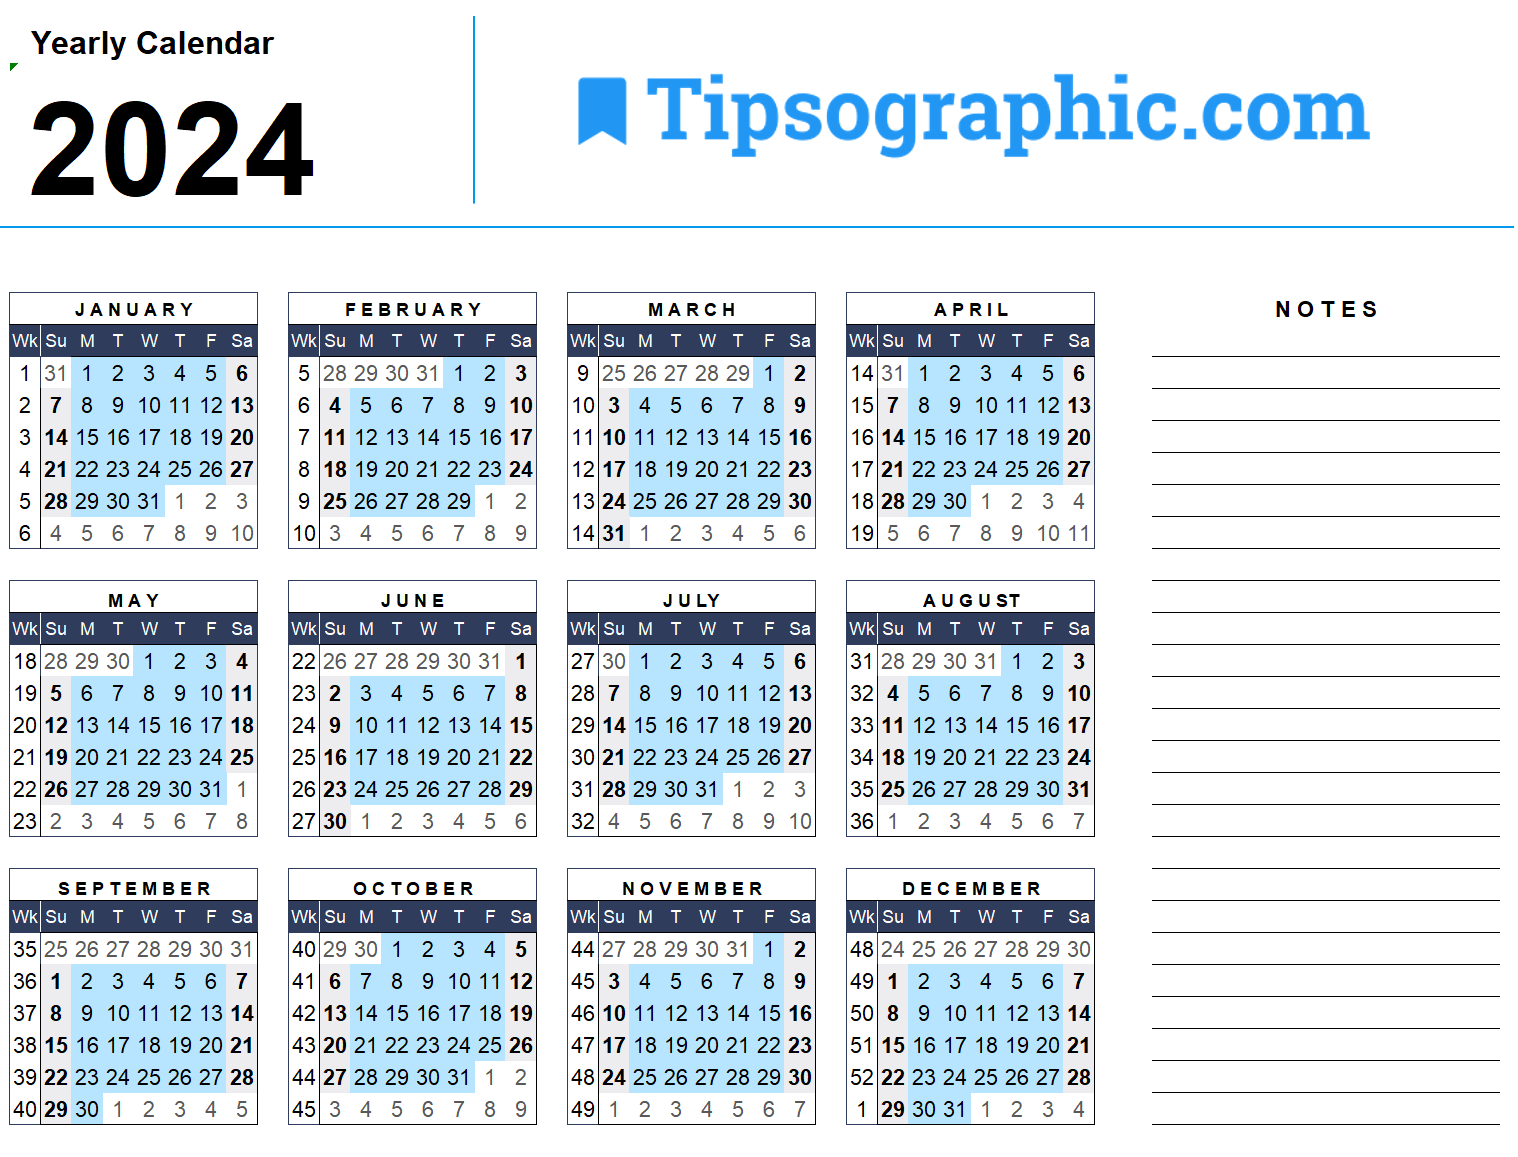 Biweekly Payroll Calendar 2024 Ub Debra Eugenie